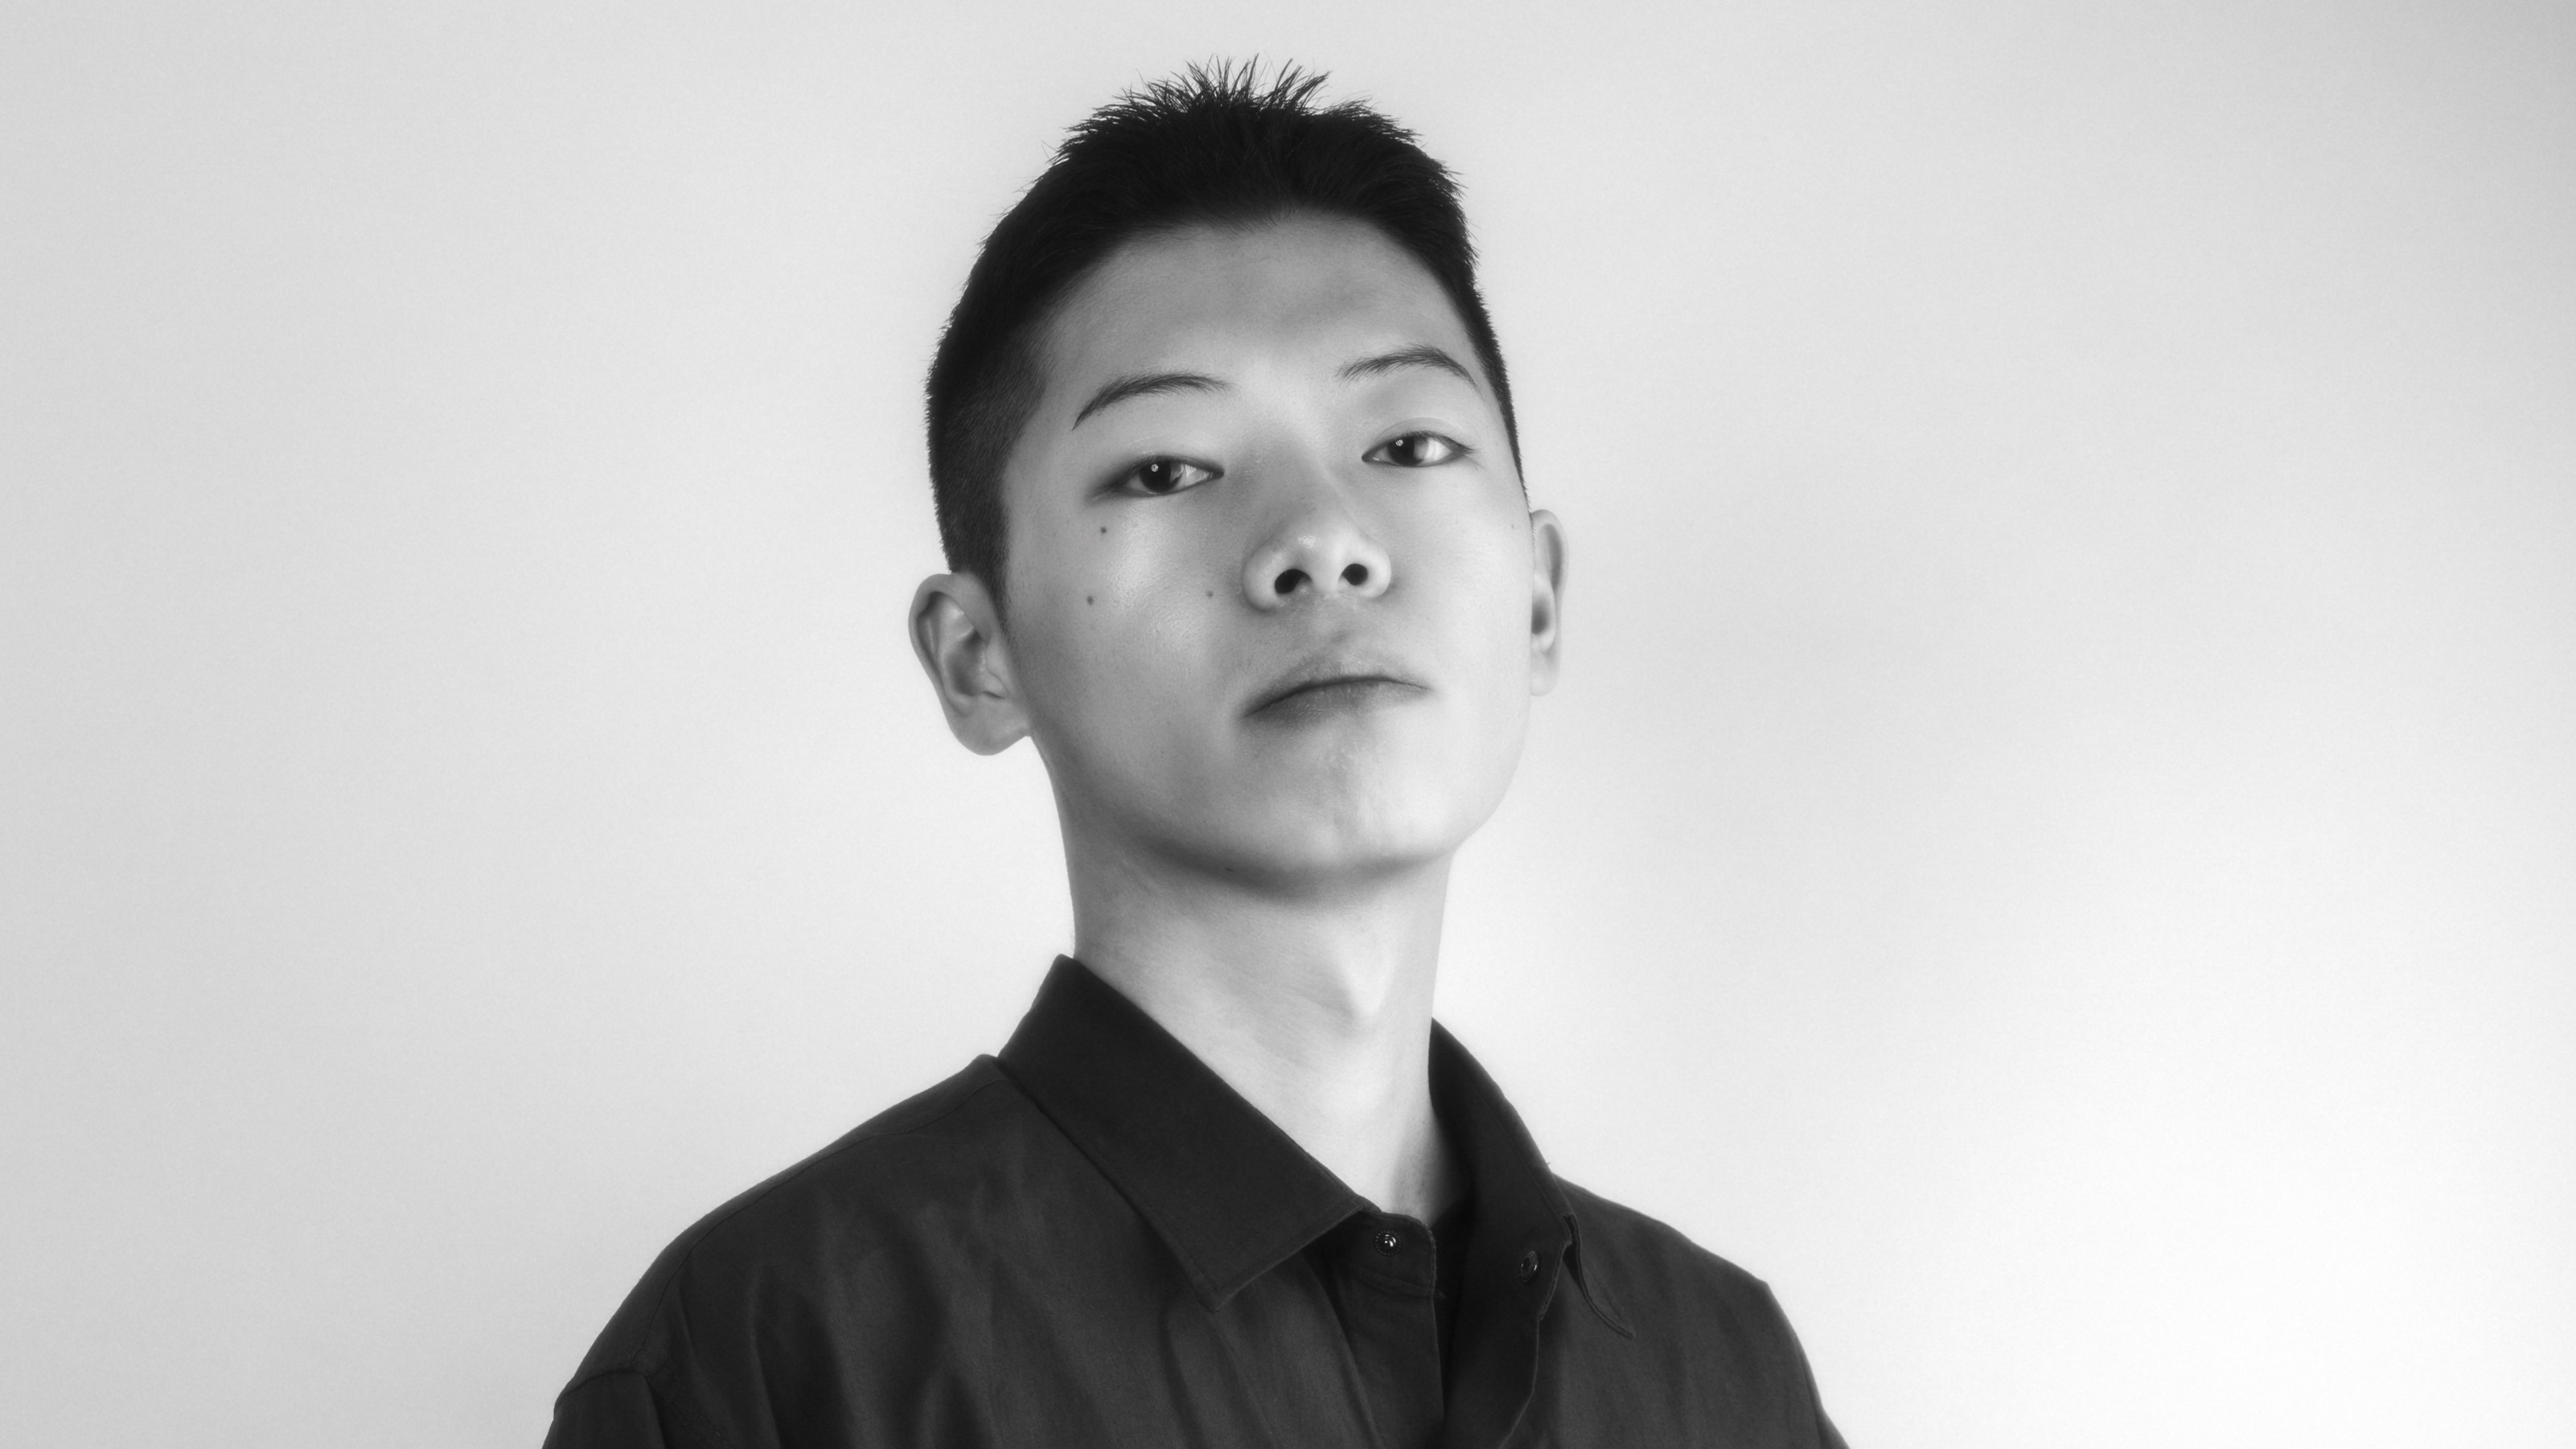 Portrait of Dongkyun Vak - The winner of “A New Gaze 3” 